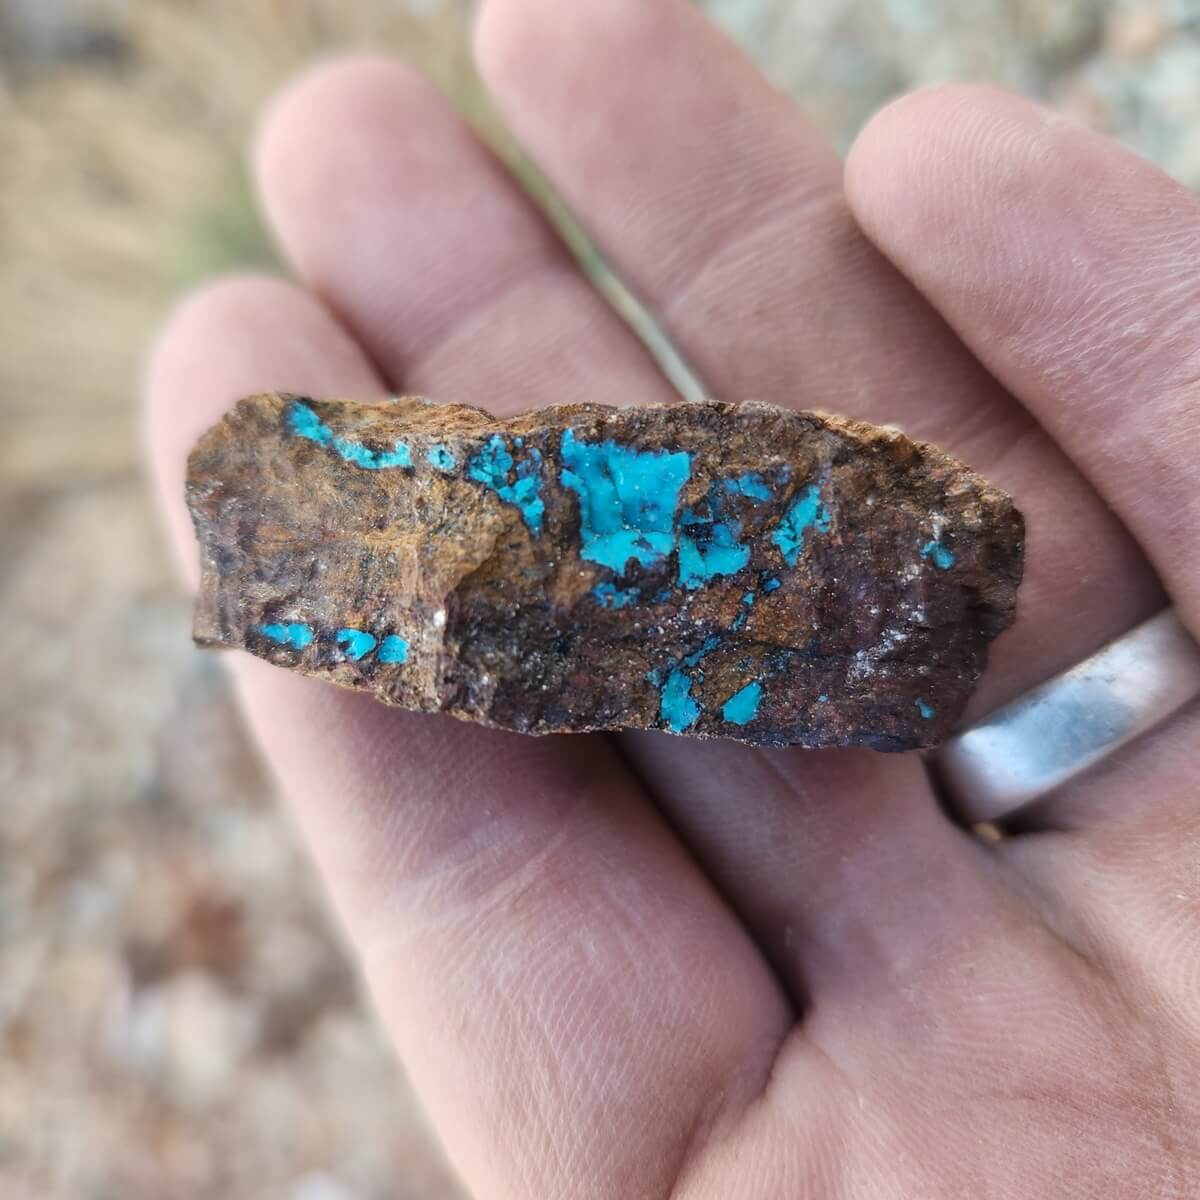 Turquoise 
Pinel County, Arizona 